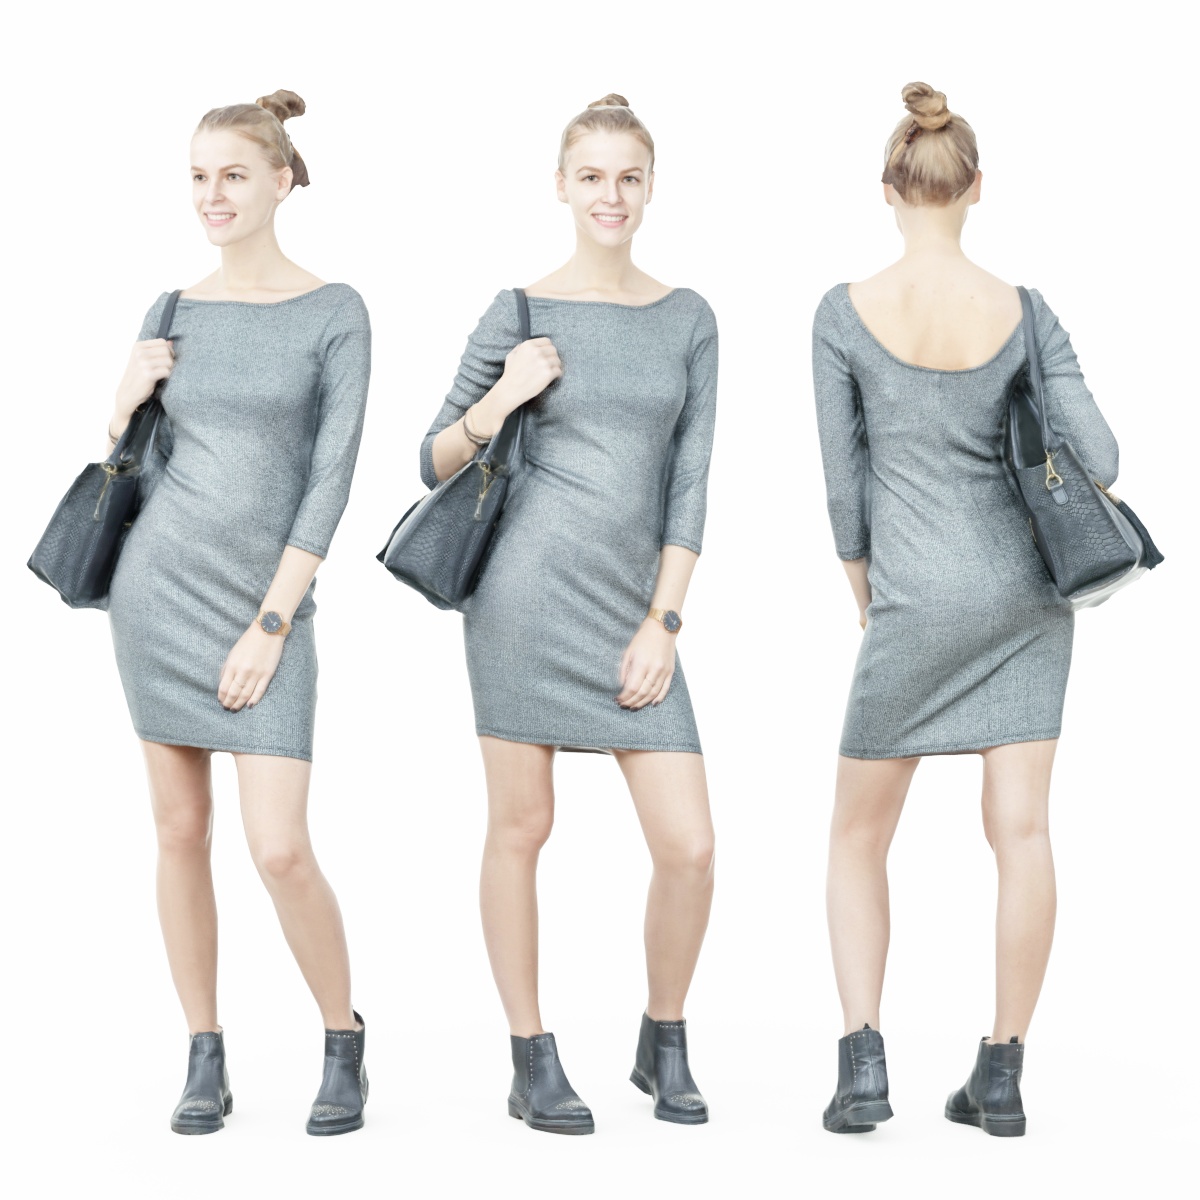 Girl in Grey Dress with Handbag on Shoulder